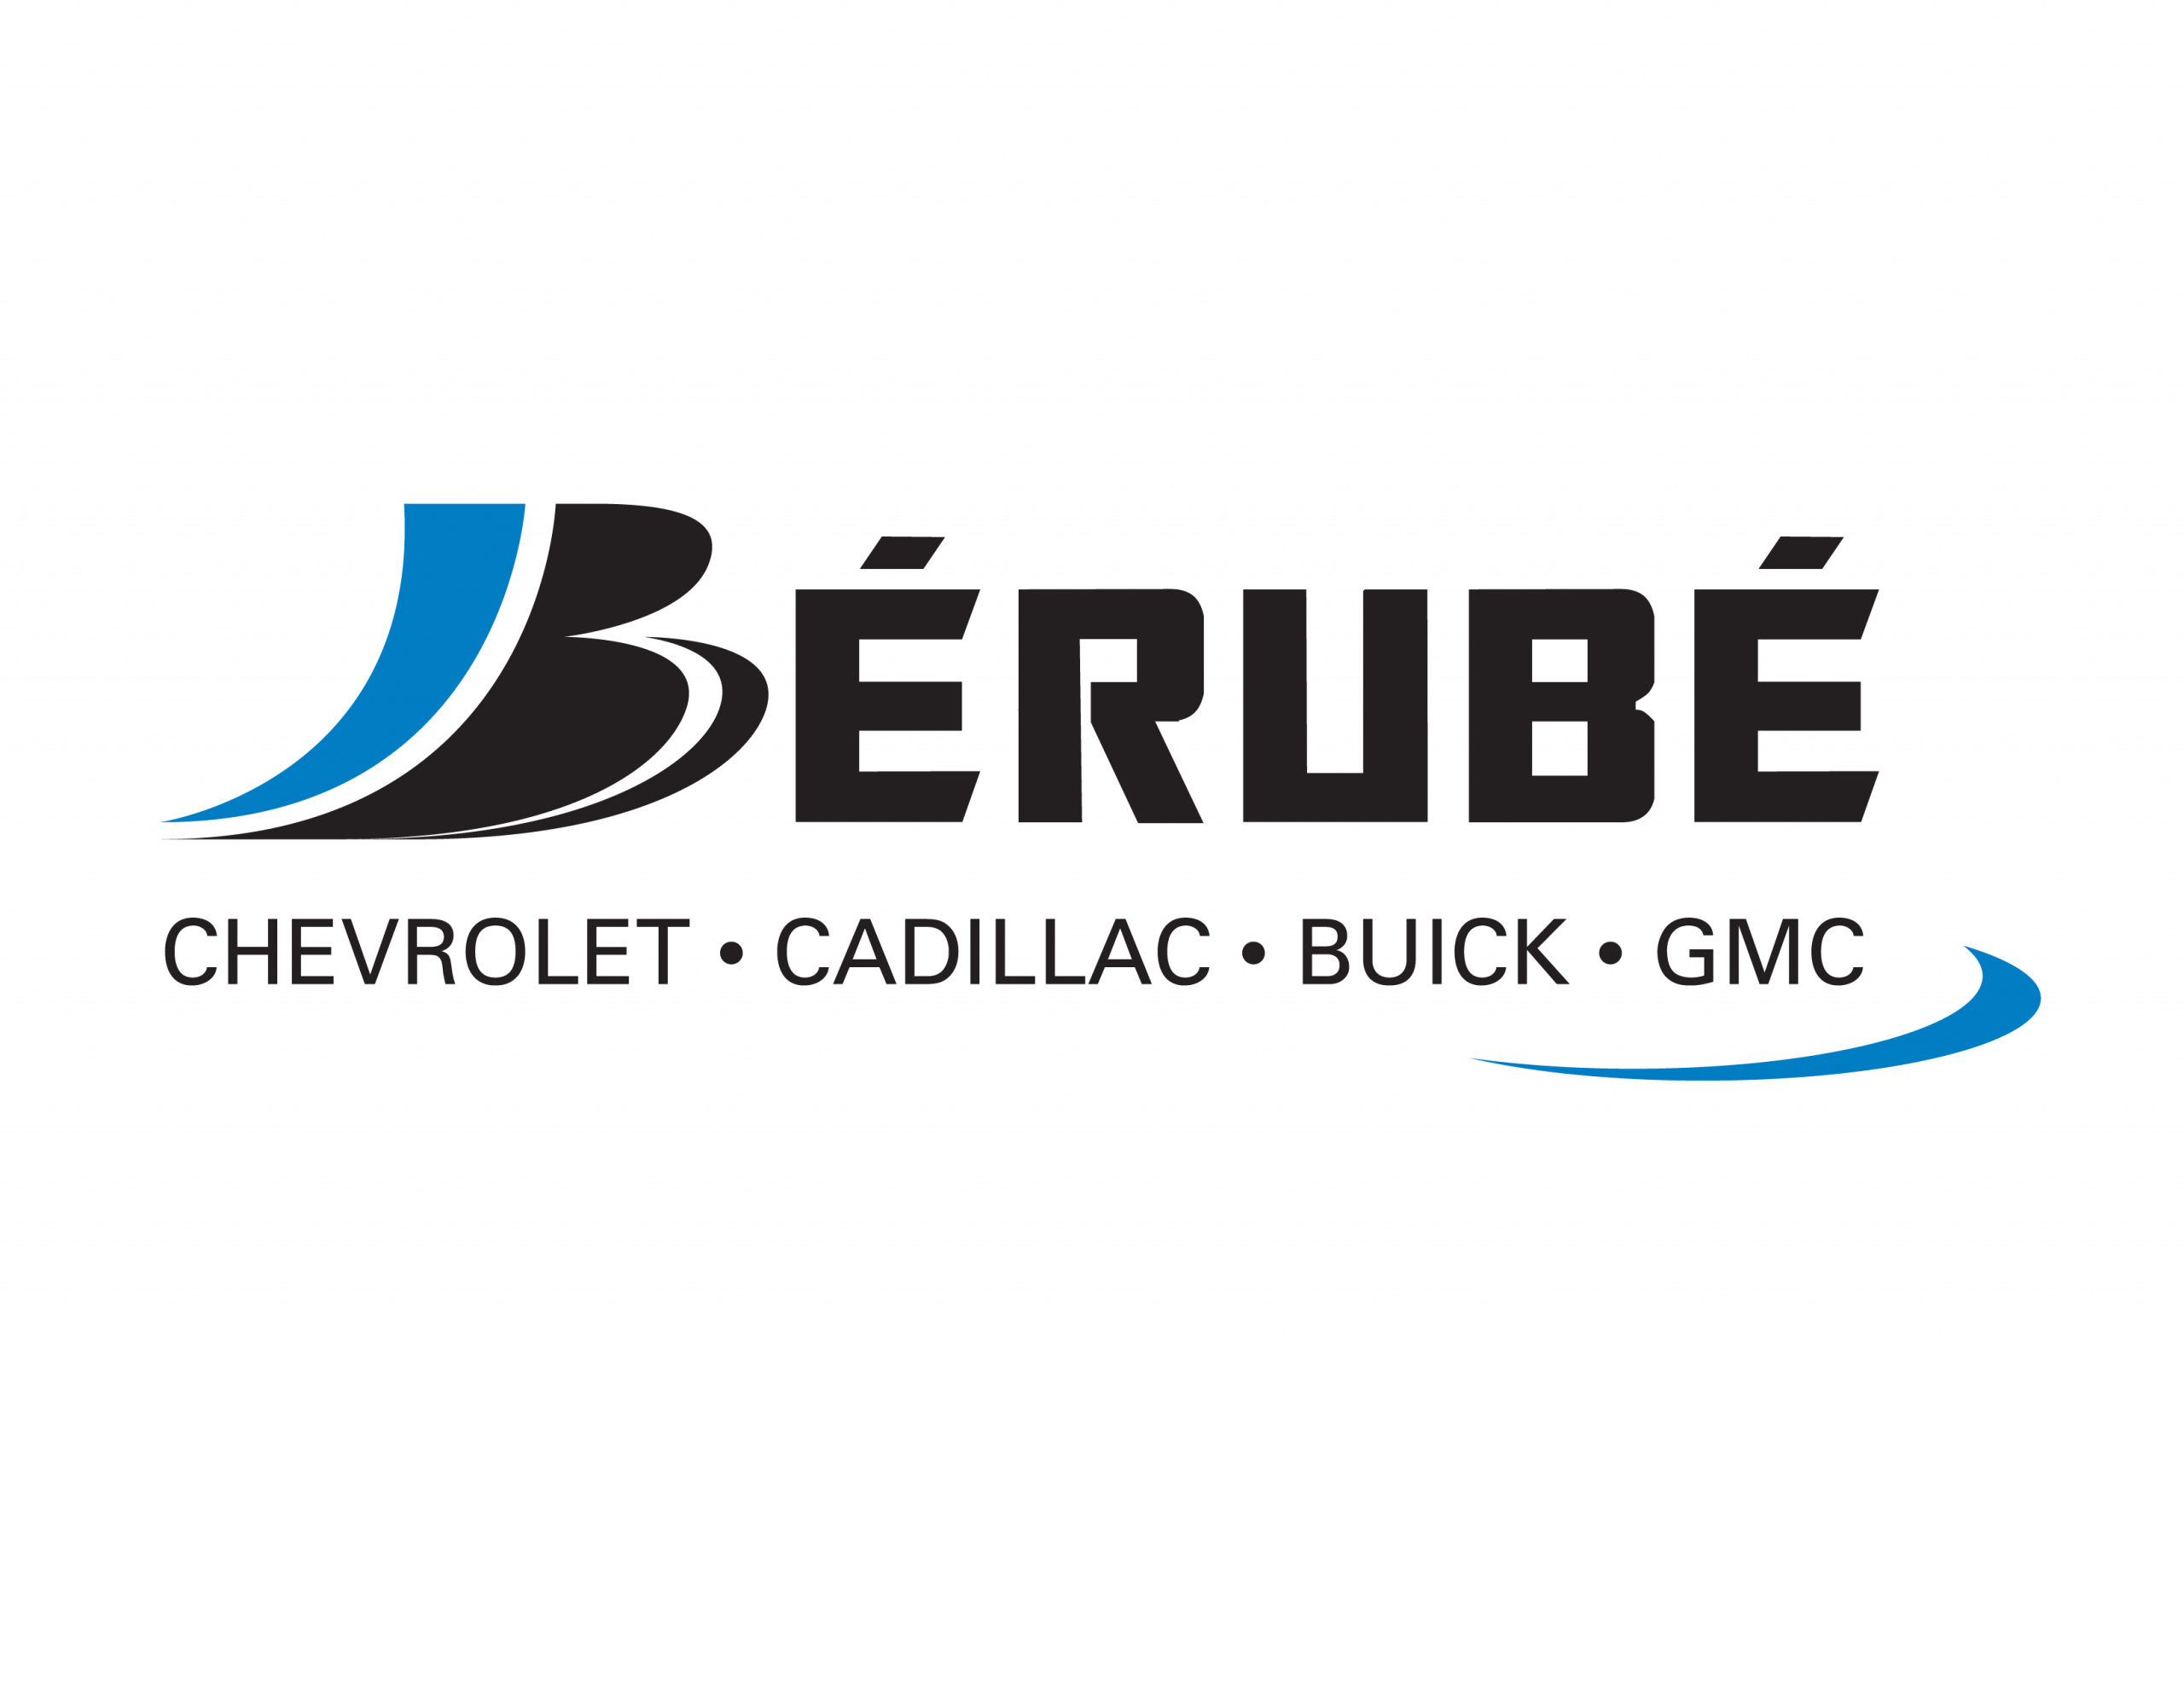 Service Bérubé_logo-01